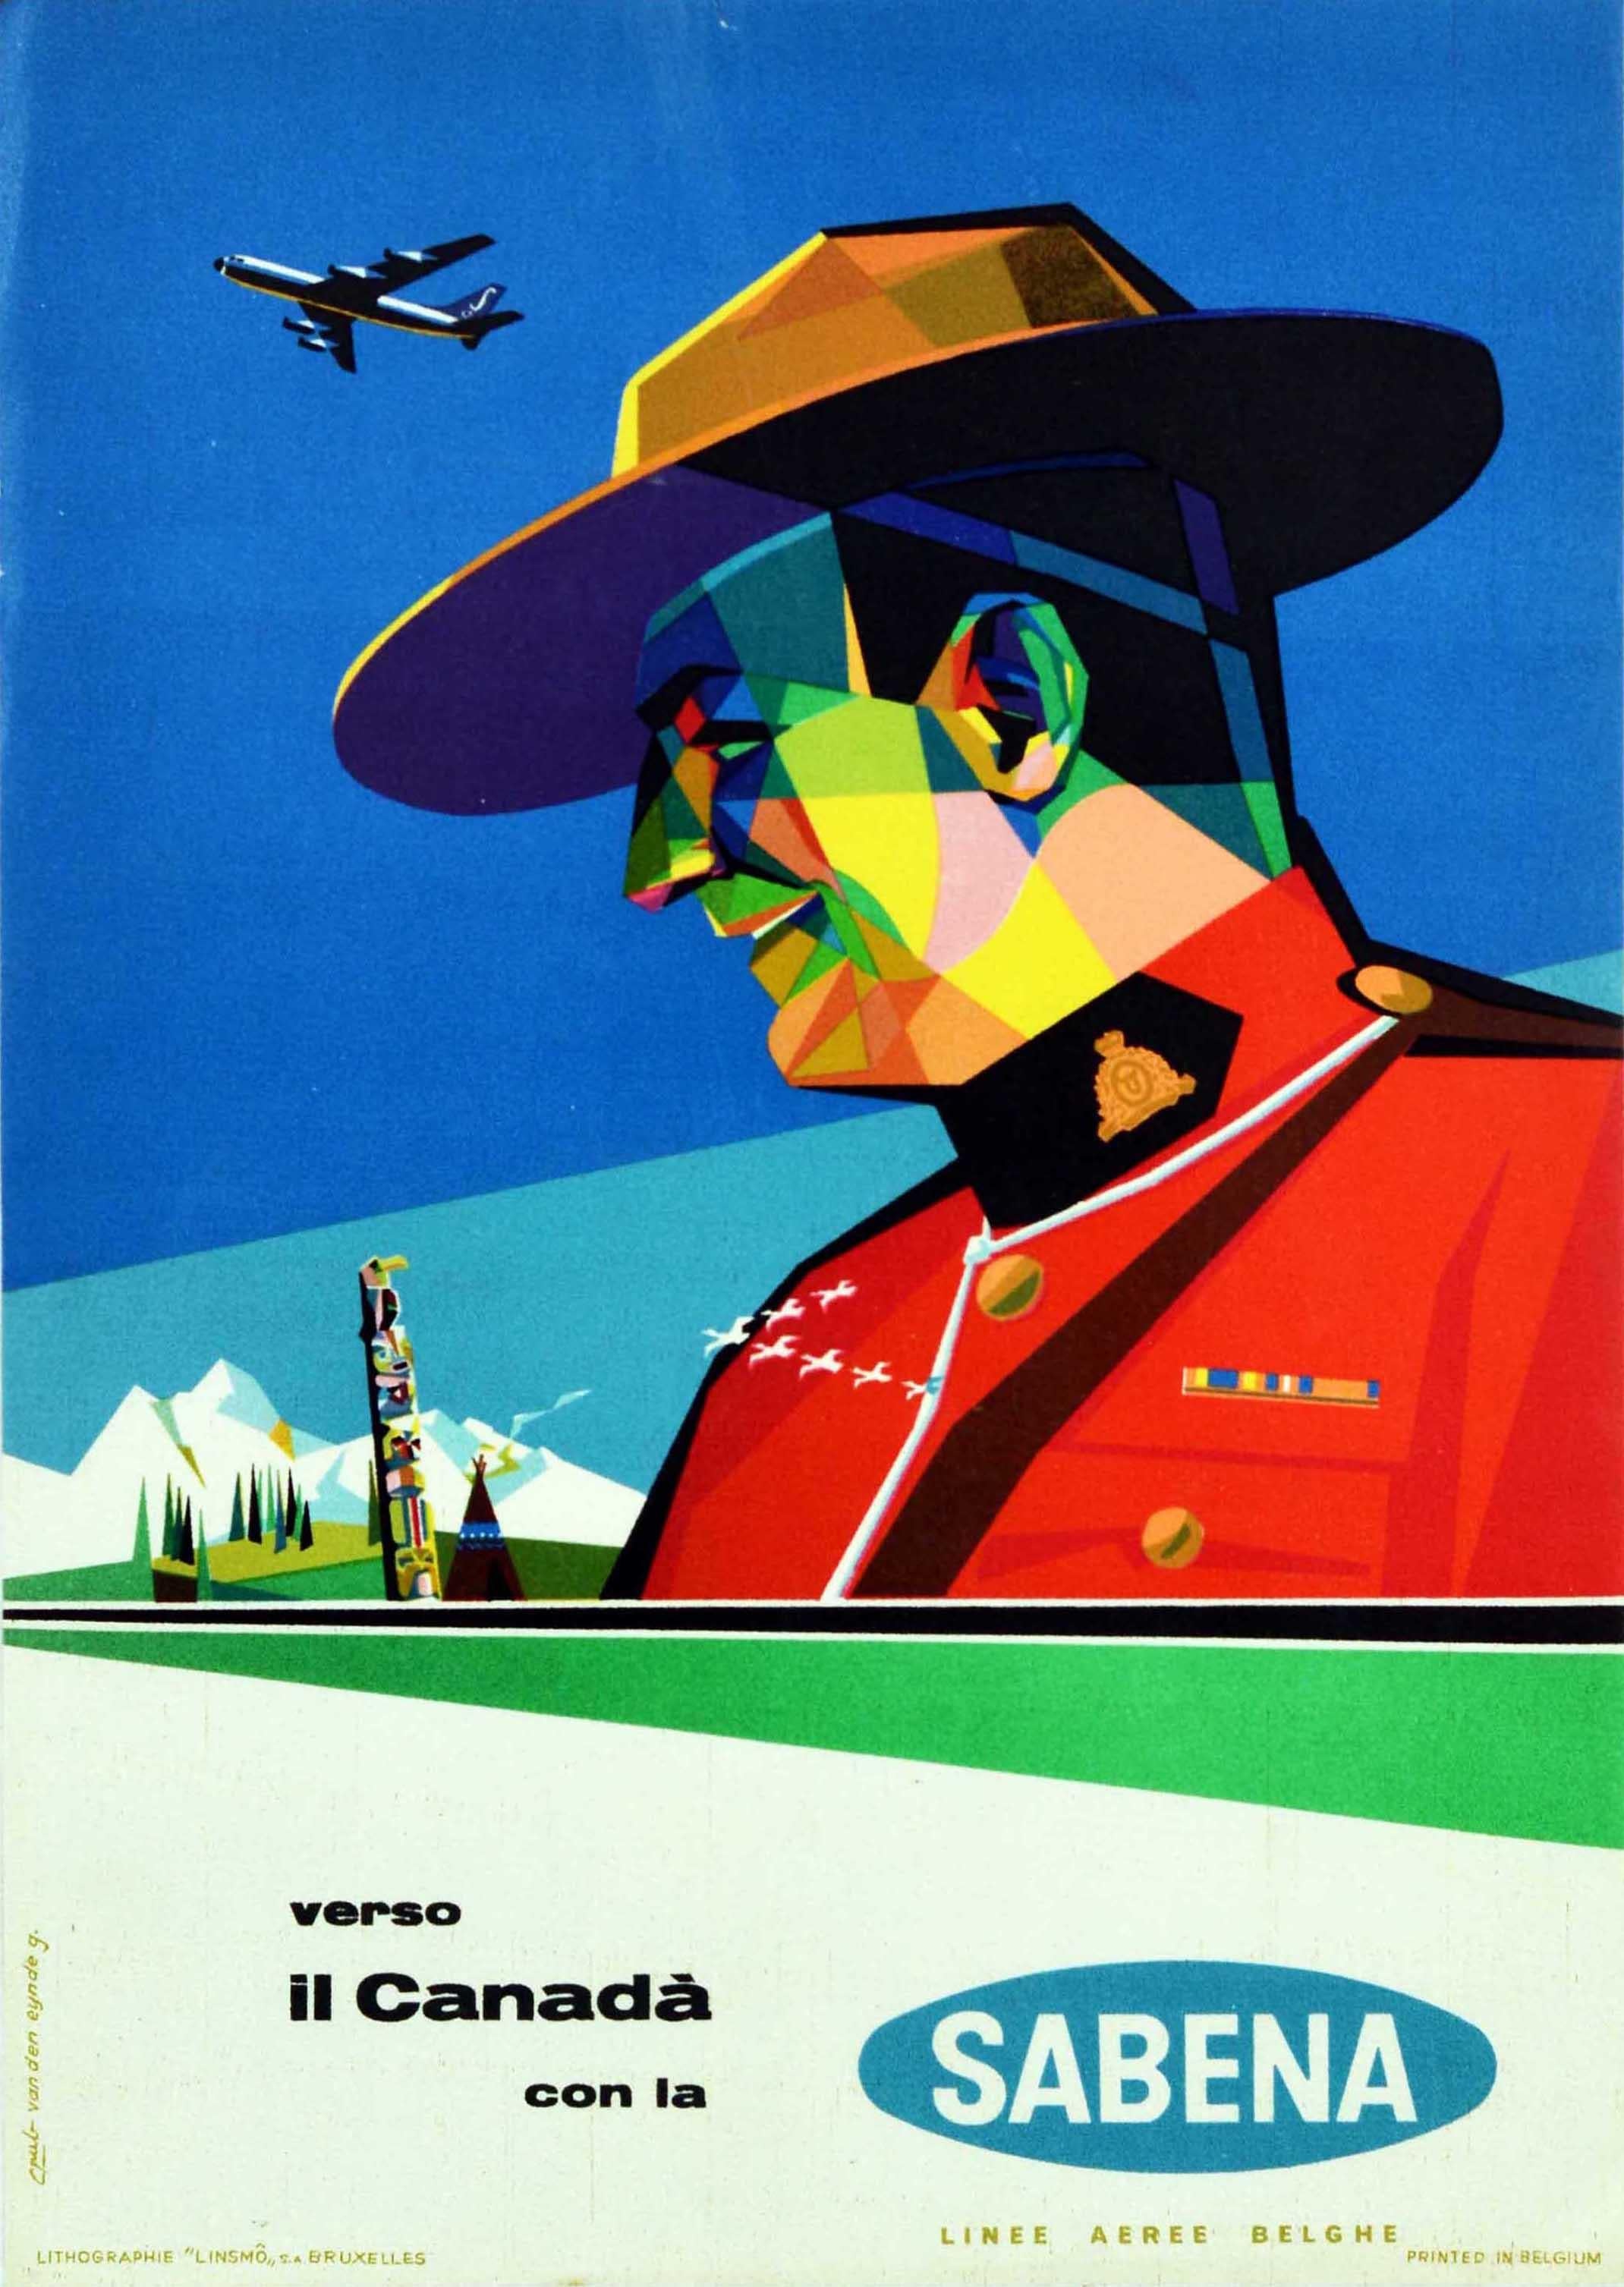 Gaston van den Eynde Print - Original Vintage Travel Poster For Canada By Sabena Airlines RCMP Mountie Design